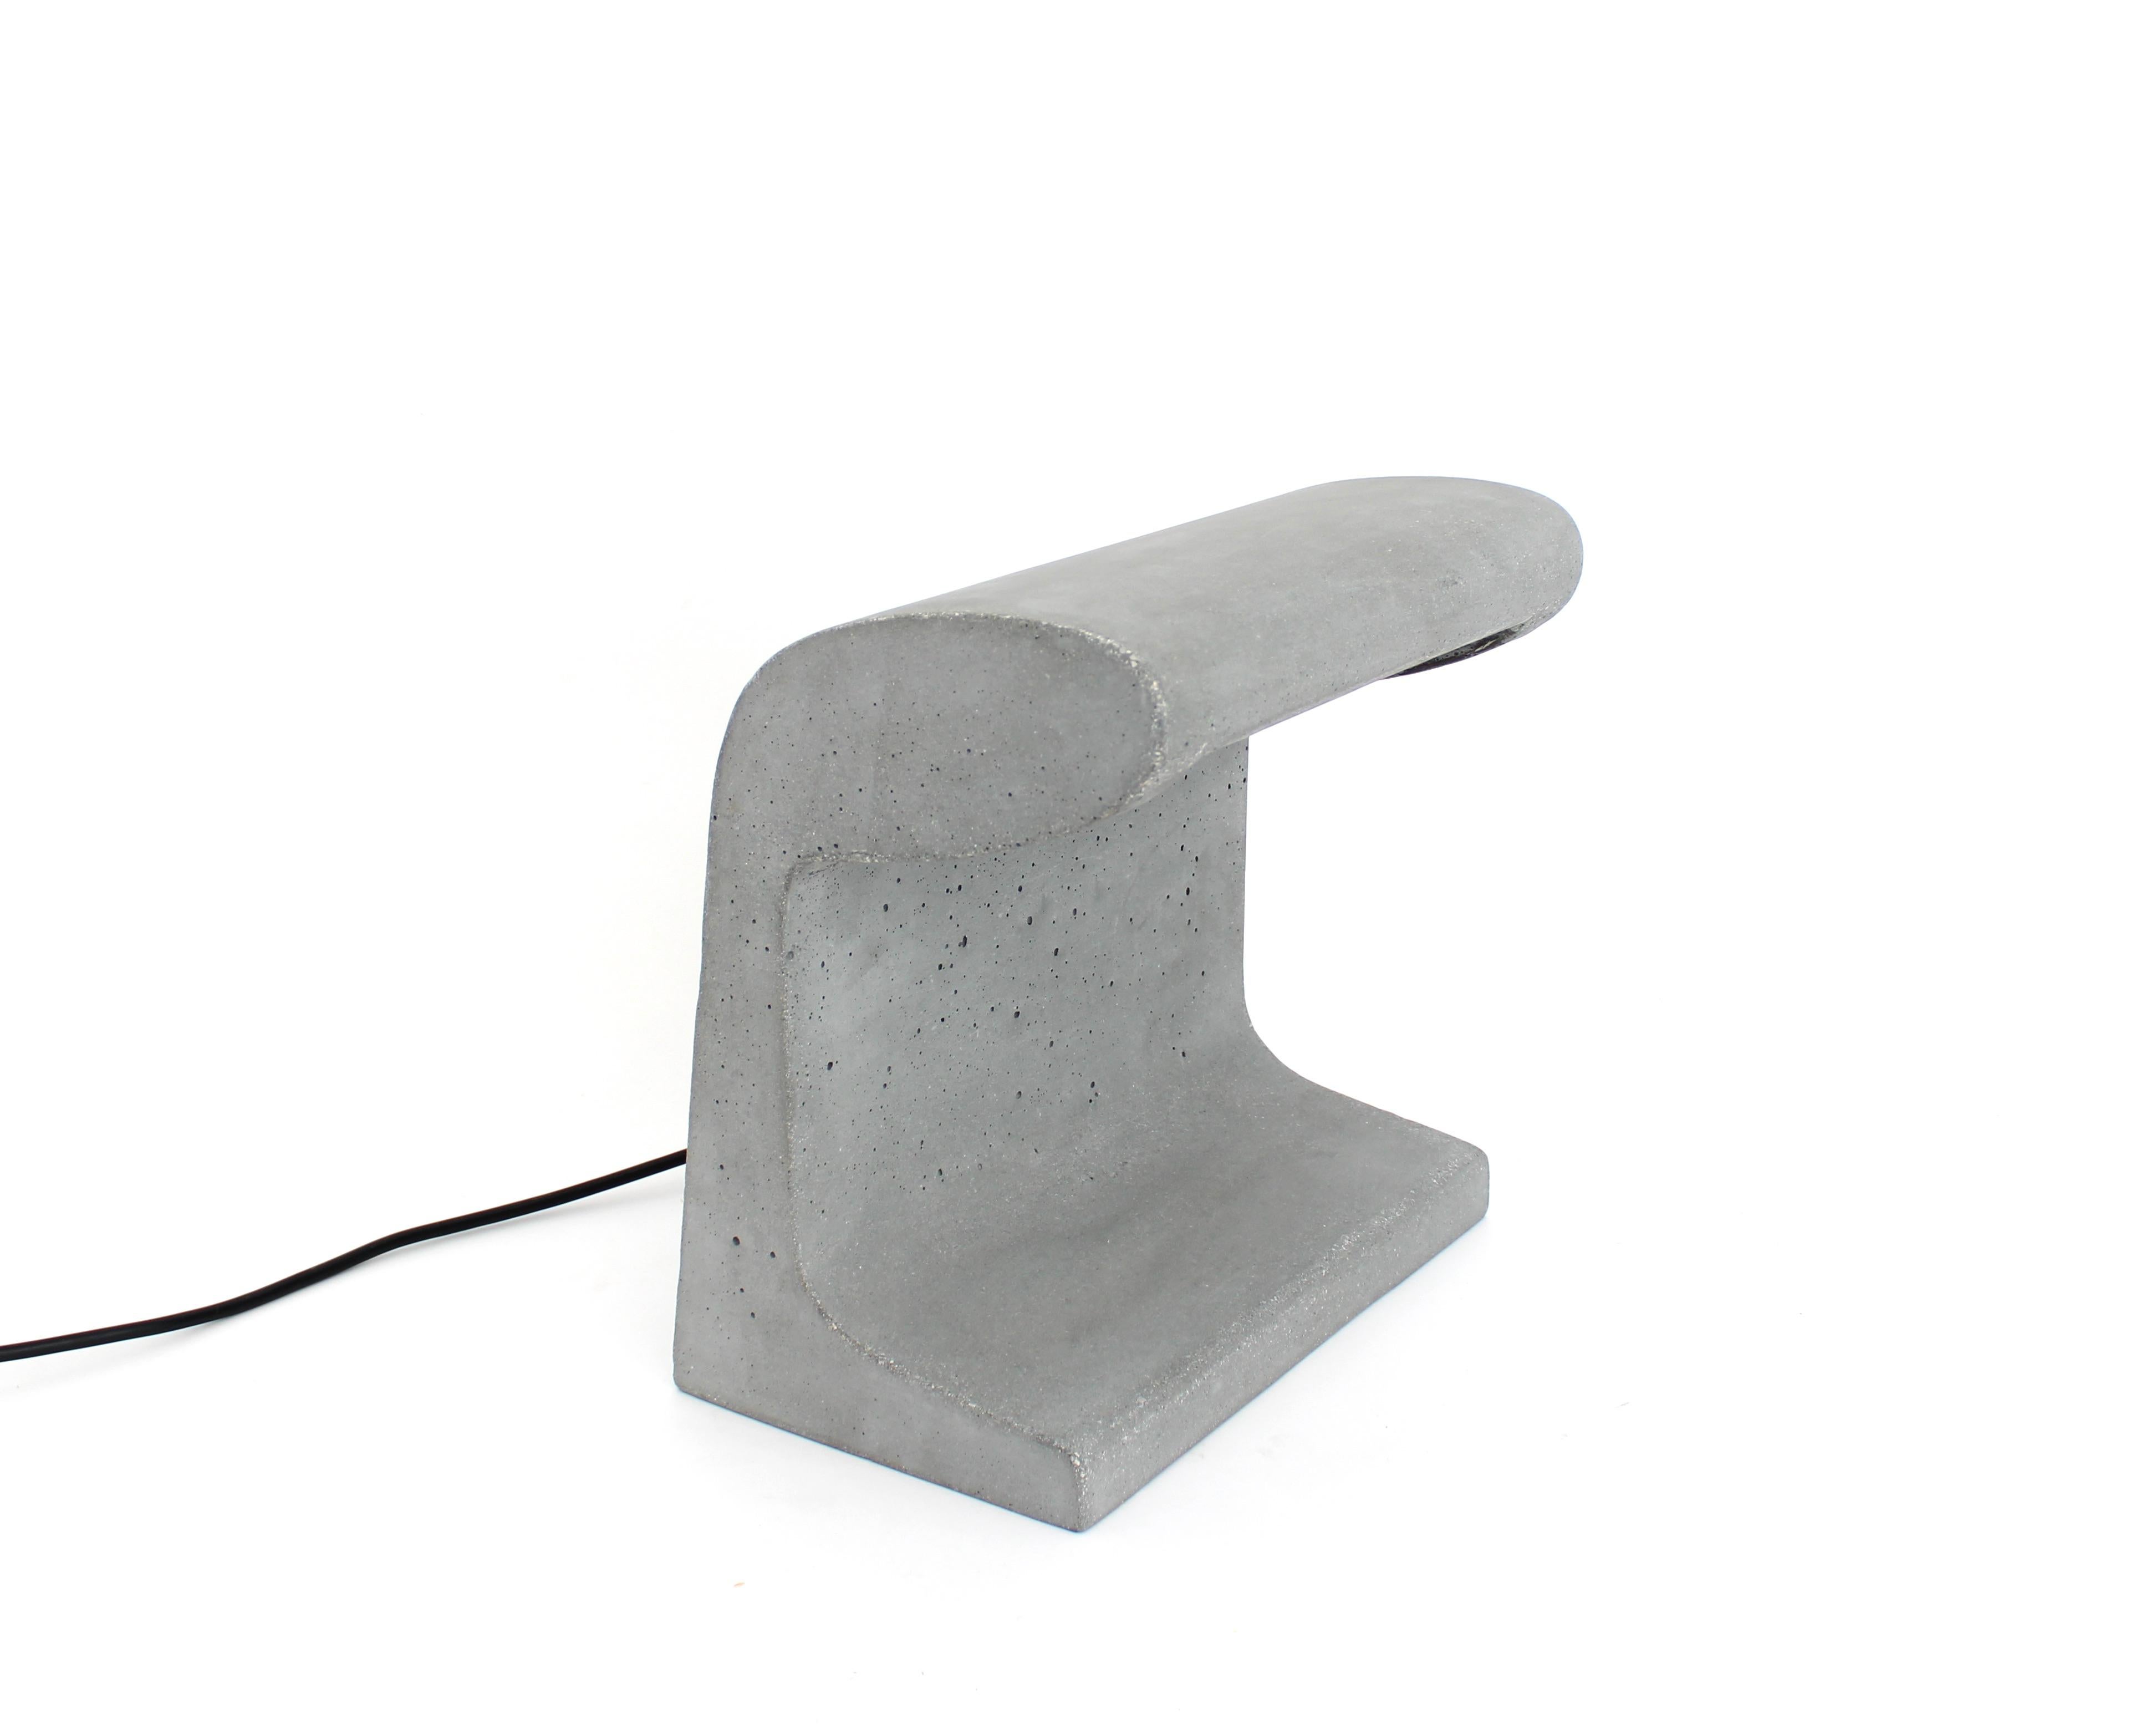 Borne Bétone Petite lampe de table par Le Corbusier. 
Production actuelle fabriquée en France par Nemo Lighting. Lampadaire et lampe de table en béton pour l'extérieur et l'intérieur, conçu pour l'Unité d'habitation de Marseille et pour le barrage